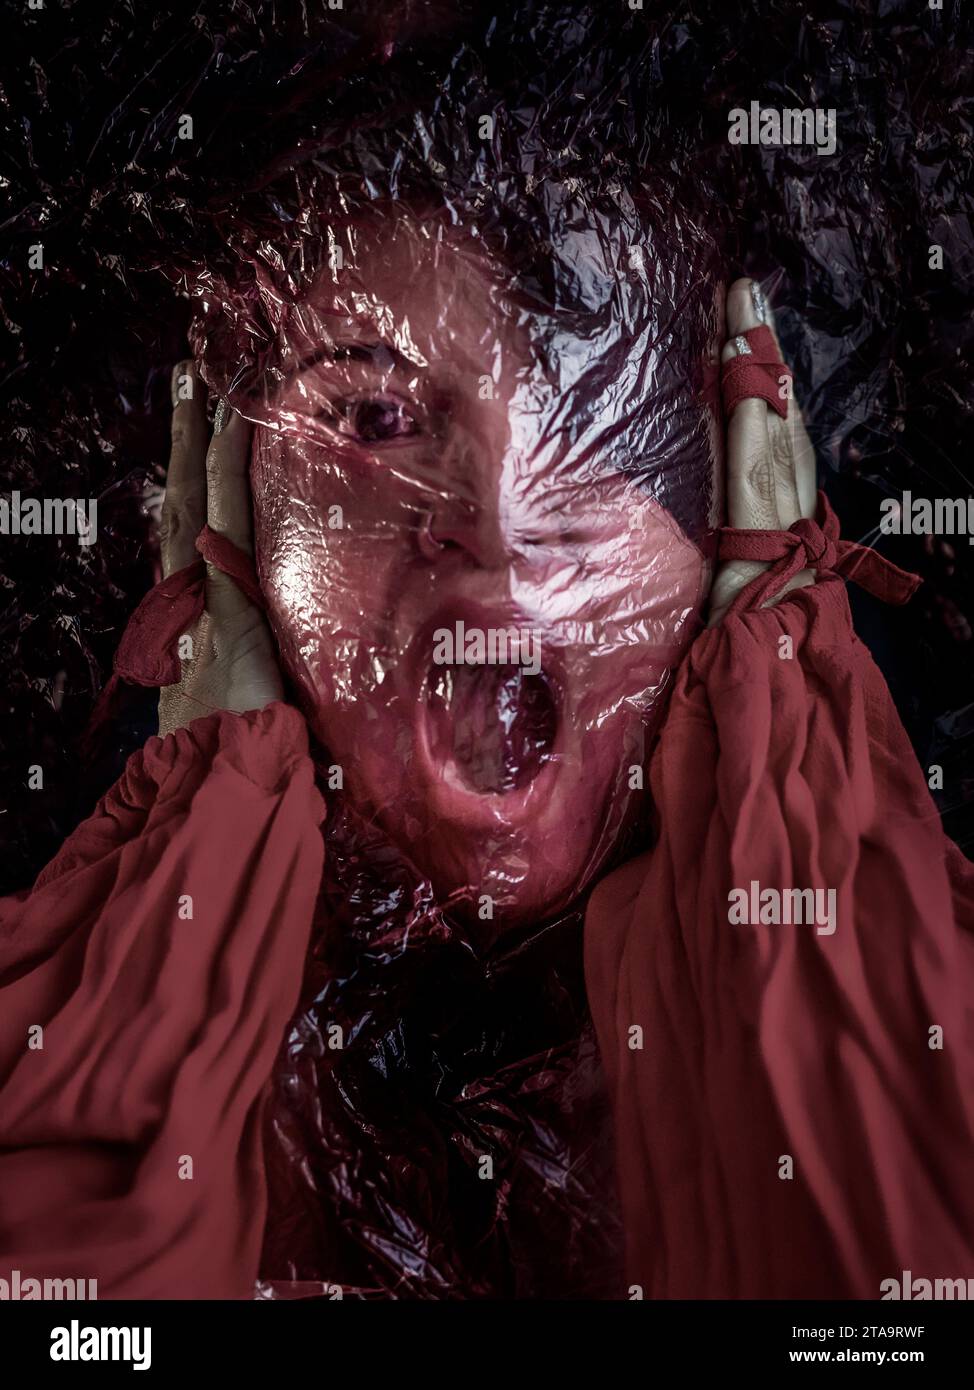 Femme avec le visage couvert par un sac transparent rouge, les mains appuyant contre ses oreilles, la bouche ouverte dans un affichage de détresse et de désespoir. Illustrati Banque D'Images